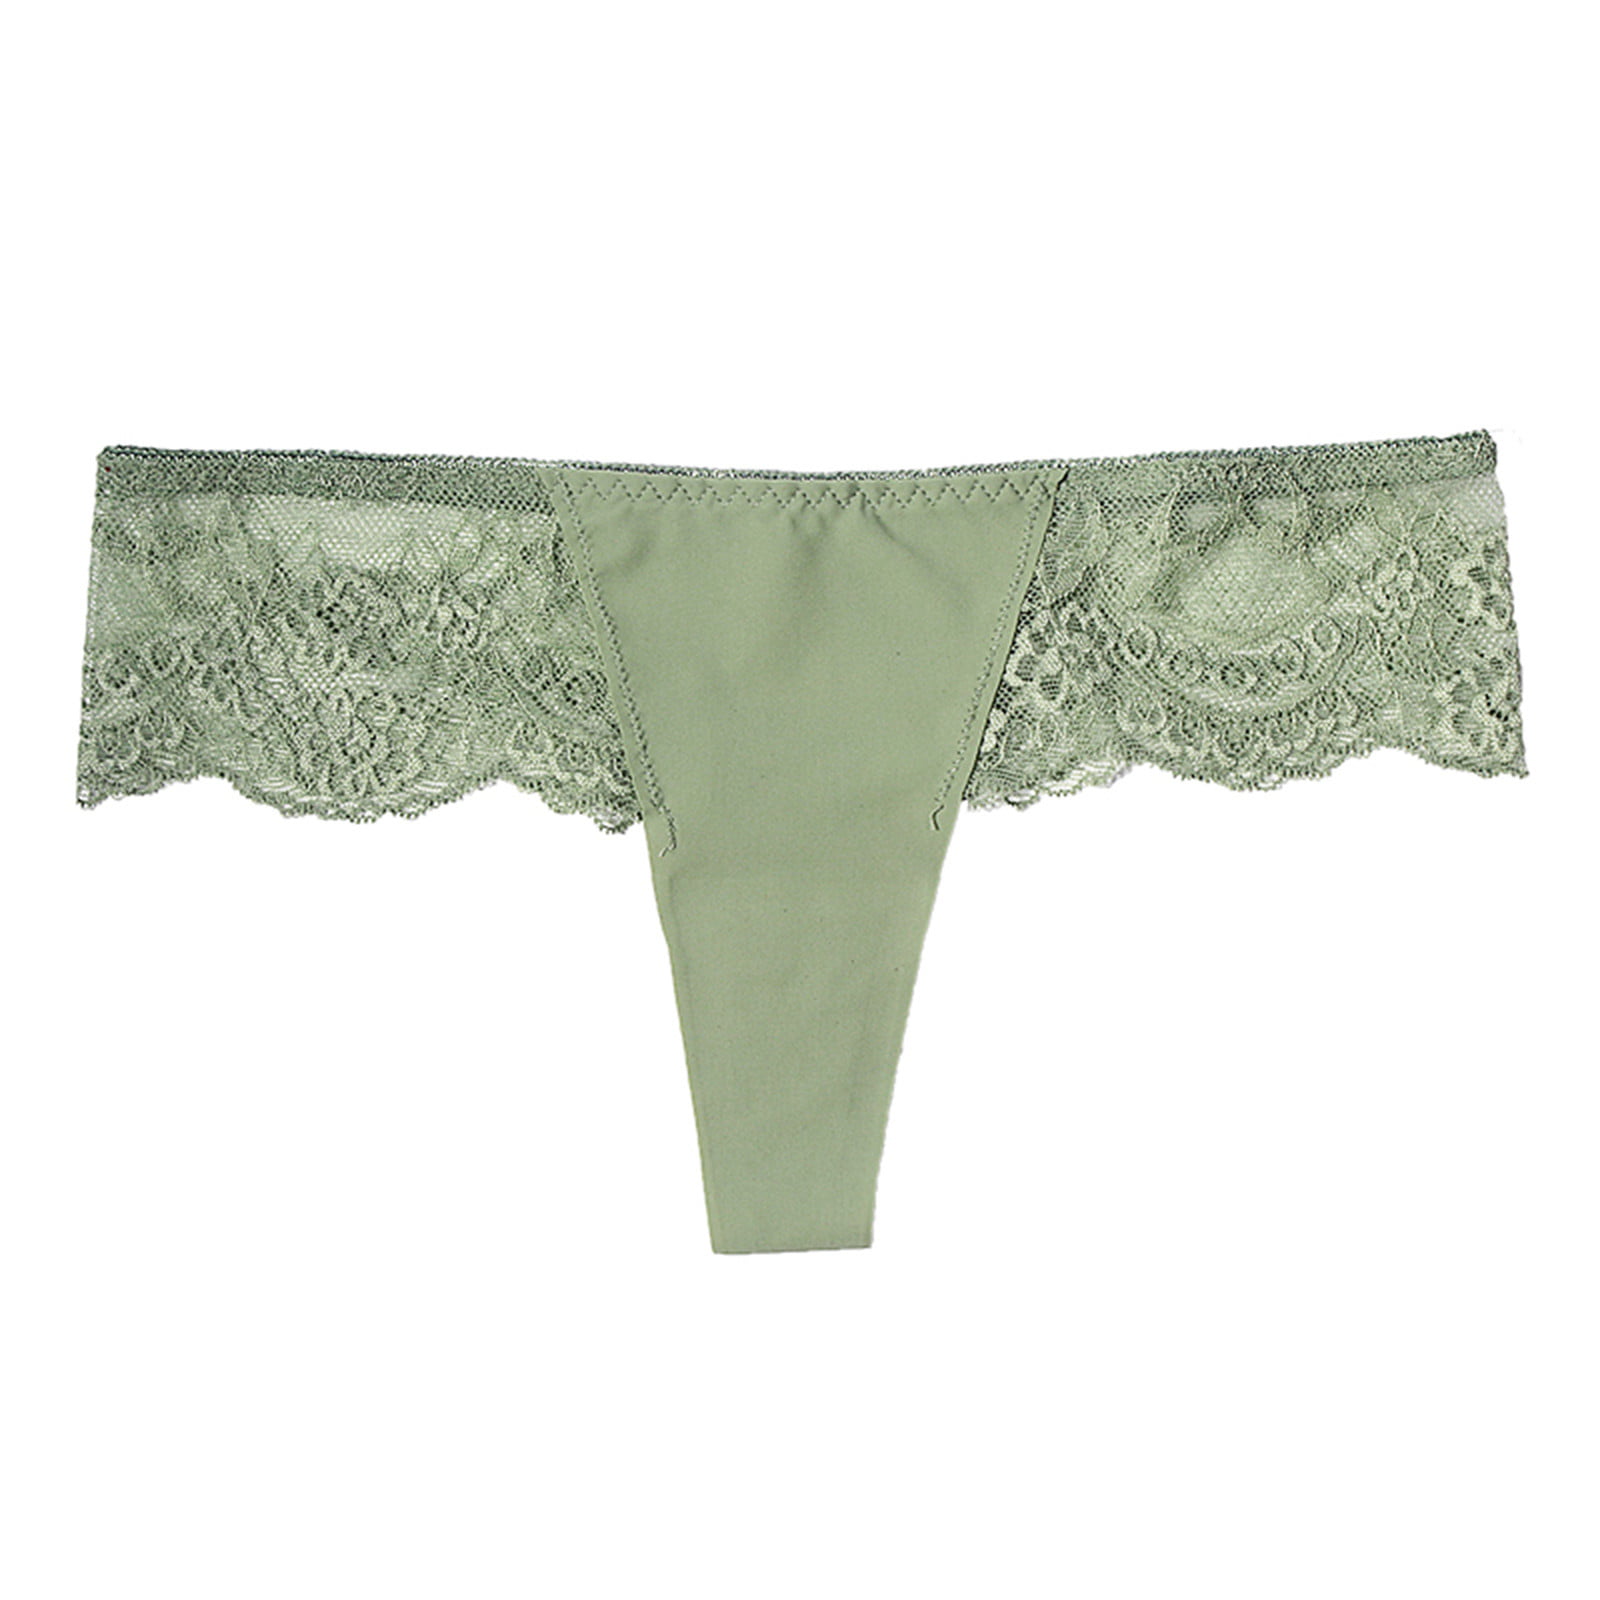 zuwimk Panties For Women Thong,Women's High Waisted Cotton